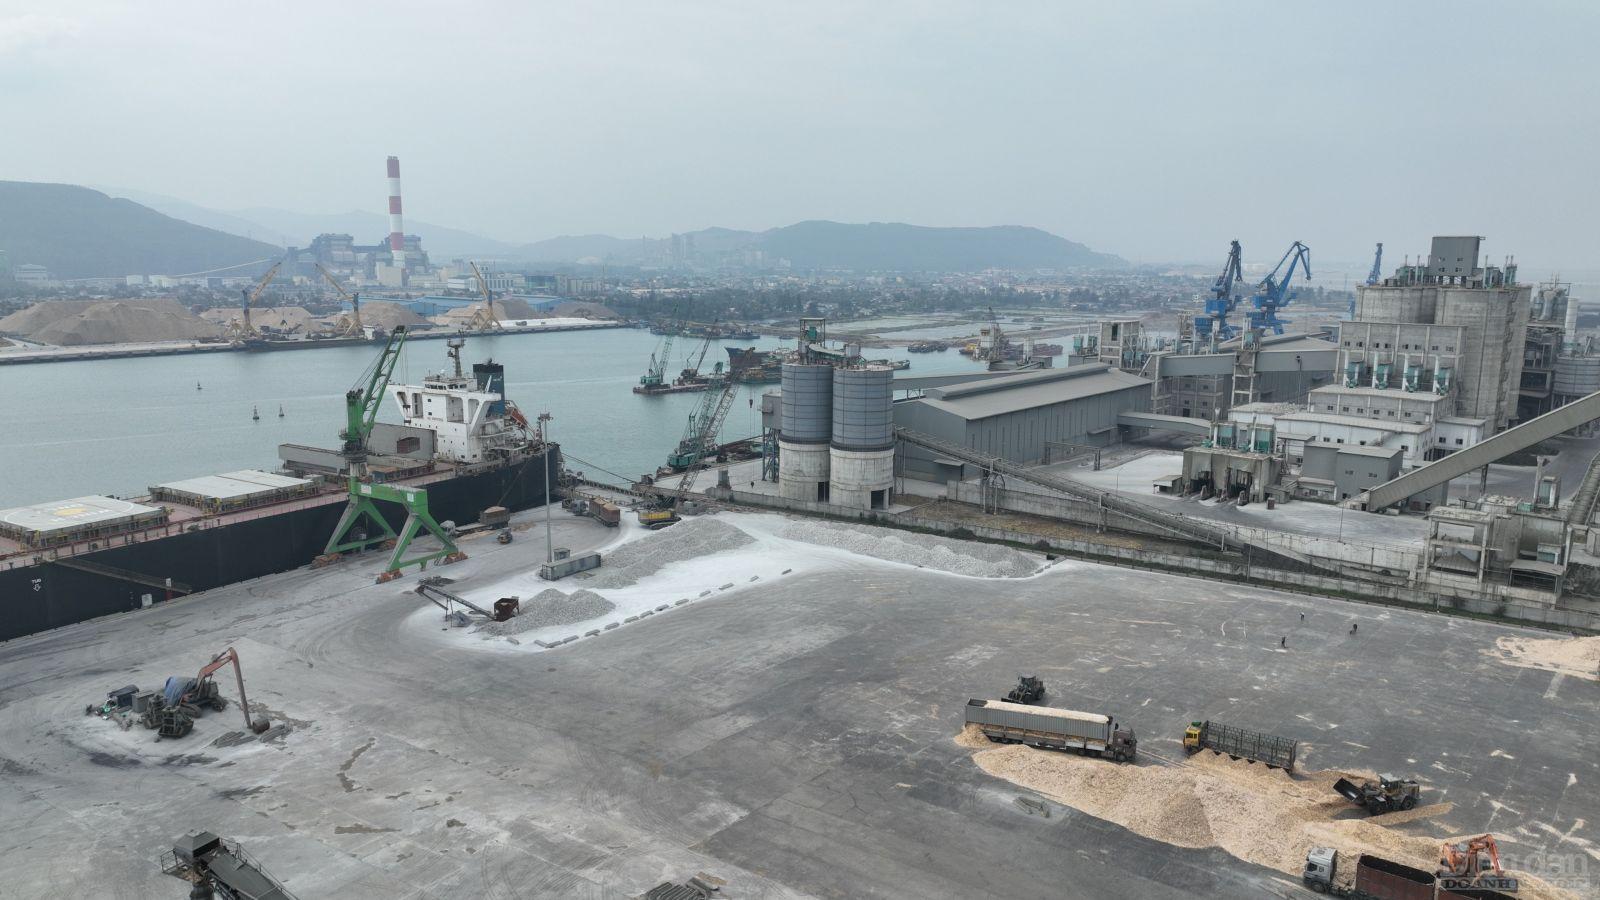 Đẩy mạnh thu hút đầu tư vào các khu kinh tế ven biển trọng điểm được ưu tiên đầu tư gắn với phát triển cảng nước sâu trong khu vực được Thanh Hoá - Nghệ An – Hà Tĩnh đặc biệt quan tâm